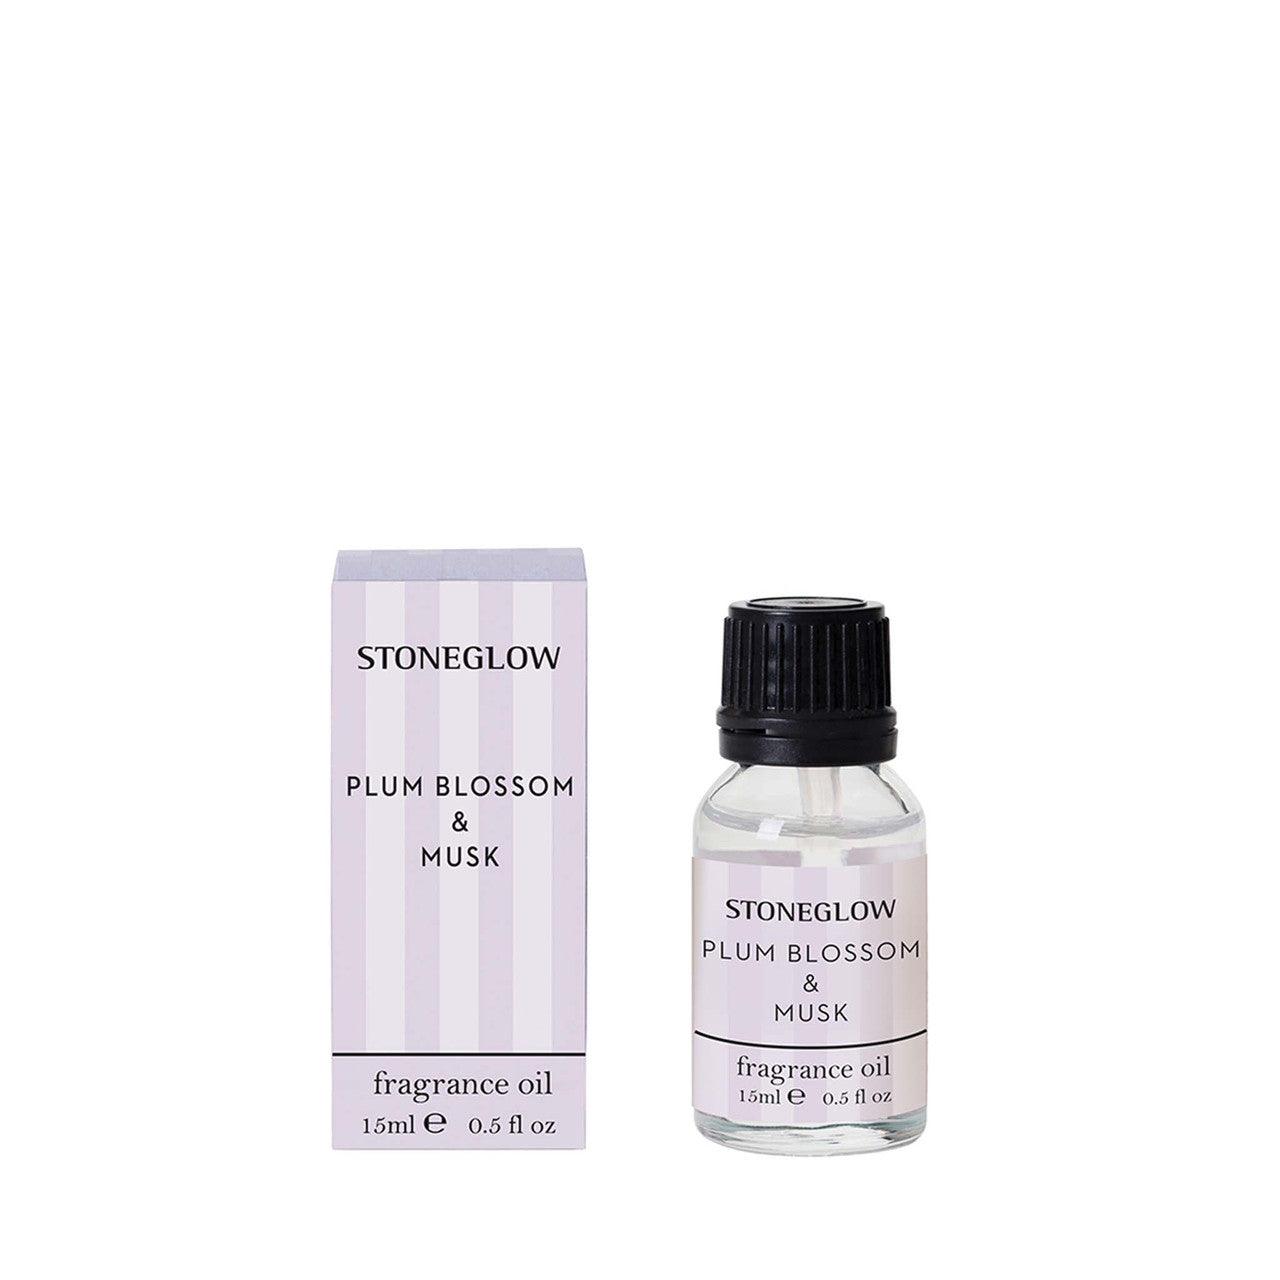 Plum Blossom & Musk - Fragrance Oil 15ml - RUTHERFORD & Co